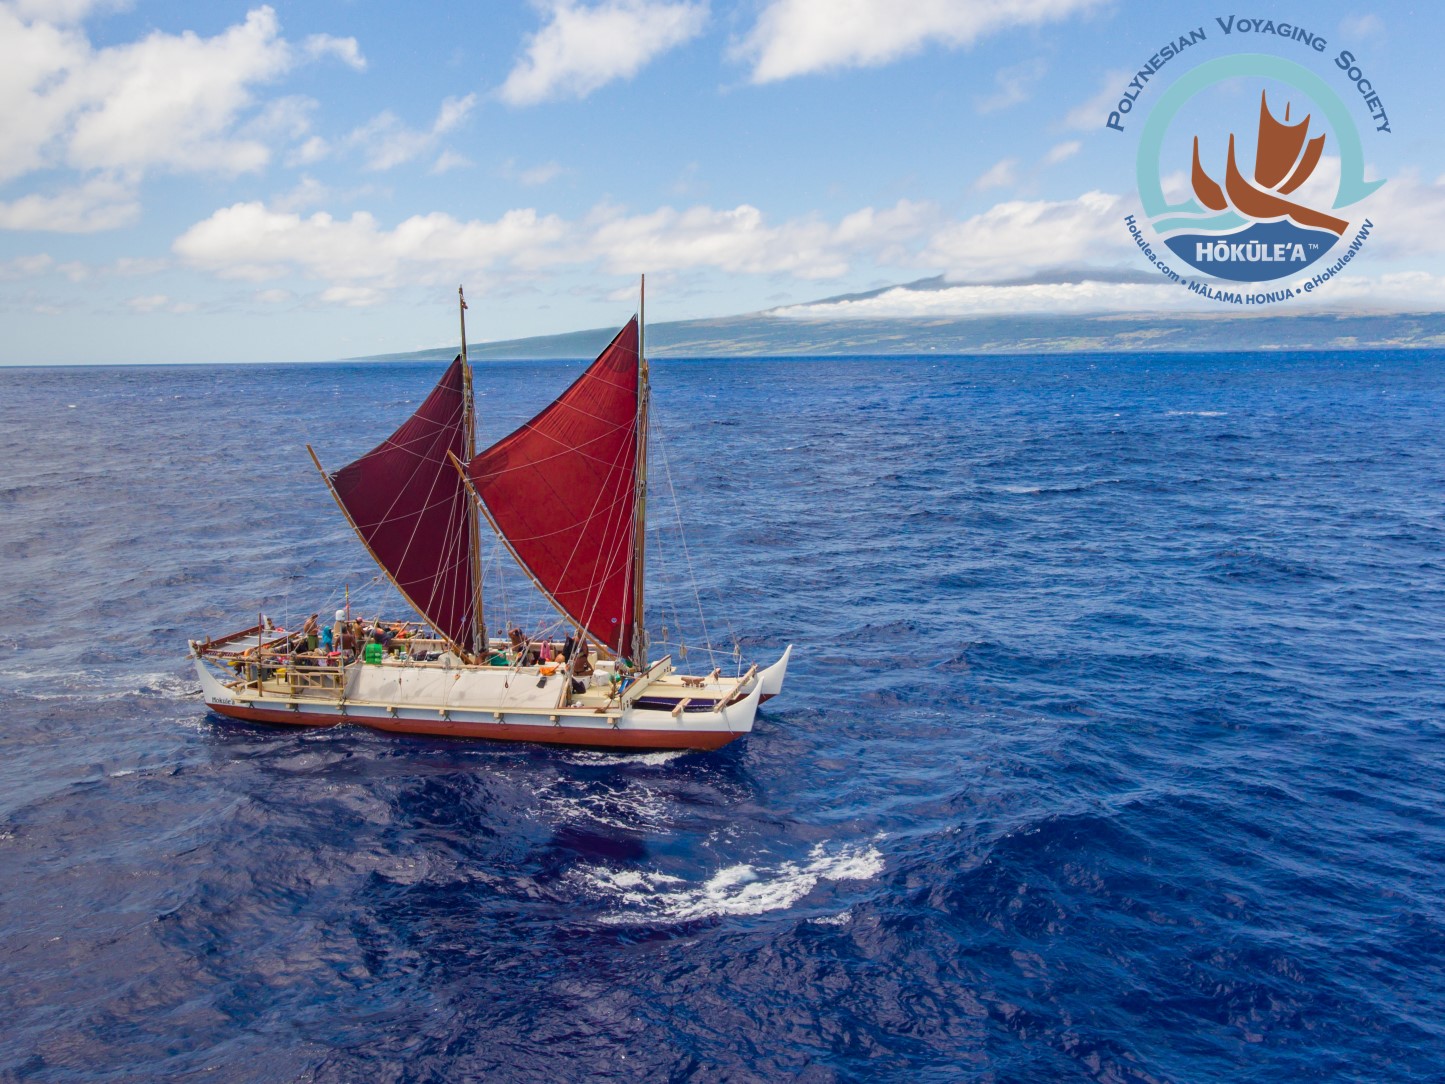 ハワイ州観光局主催 Hawaii Expo福岡 古代ポリネシアの伝統航海カヌー ホクレア号 ドキュメンタリー映画 日本初上映 ハワイ州観光局のプレスリリース